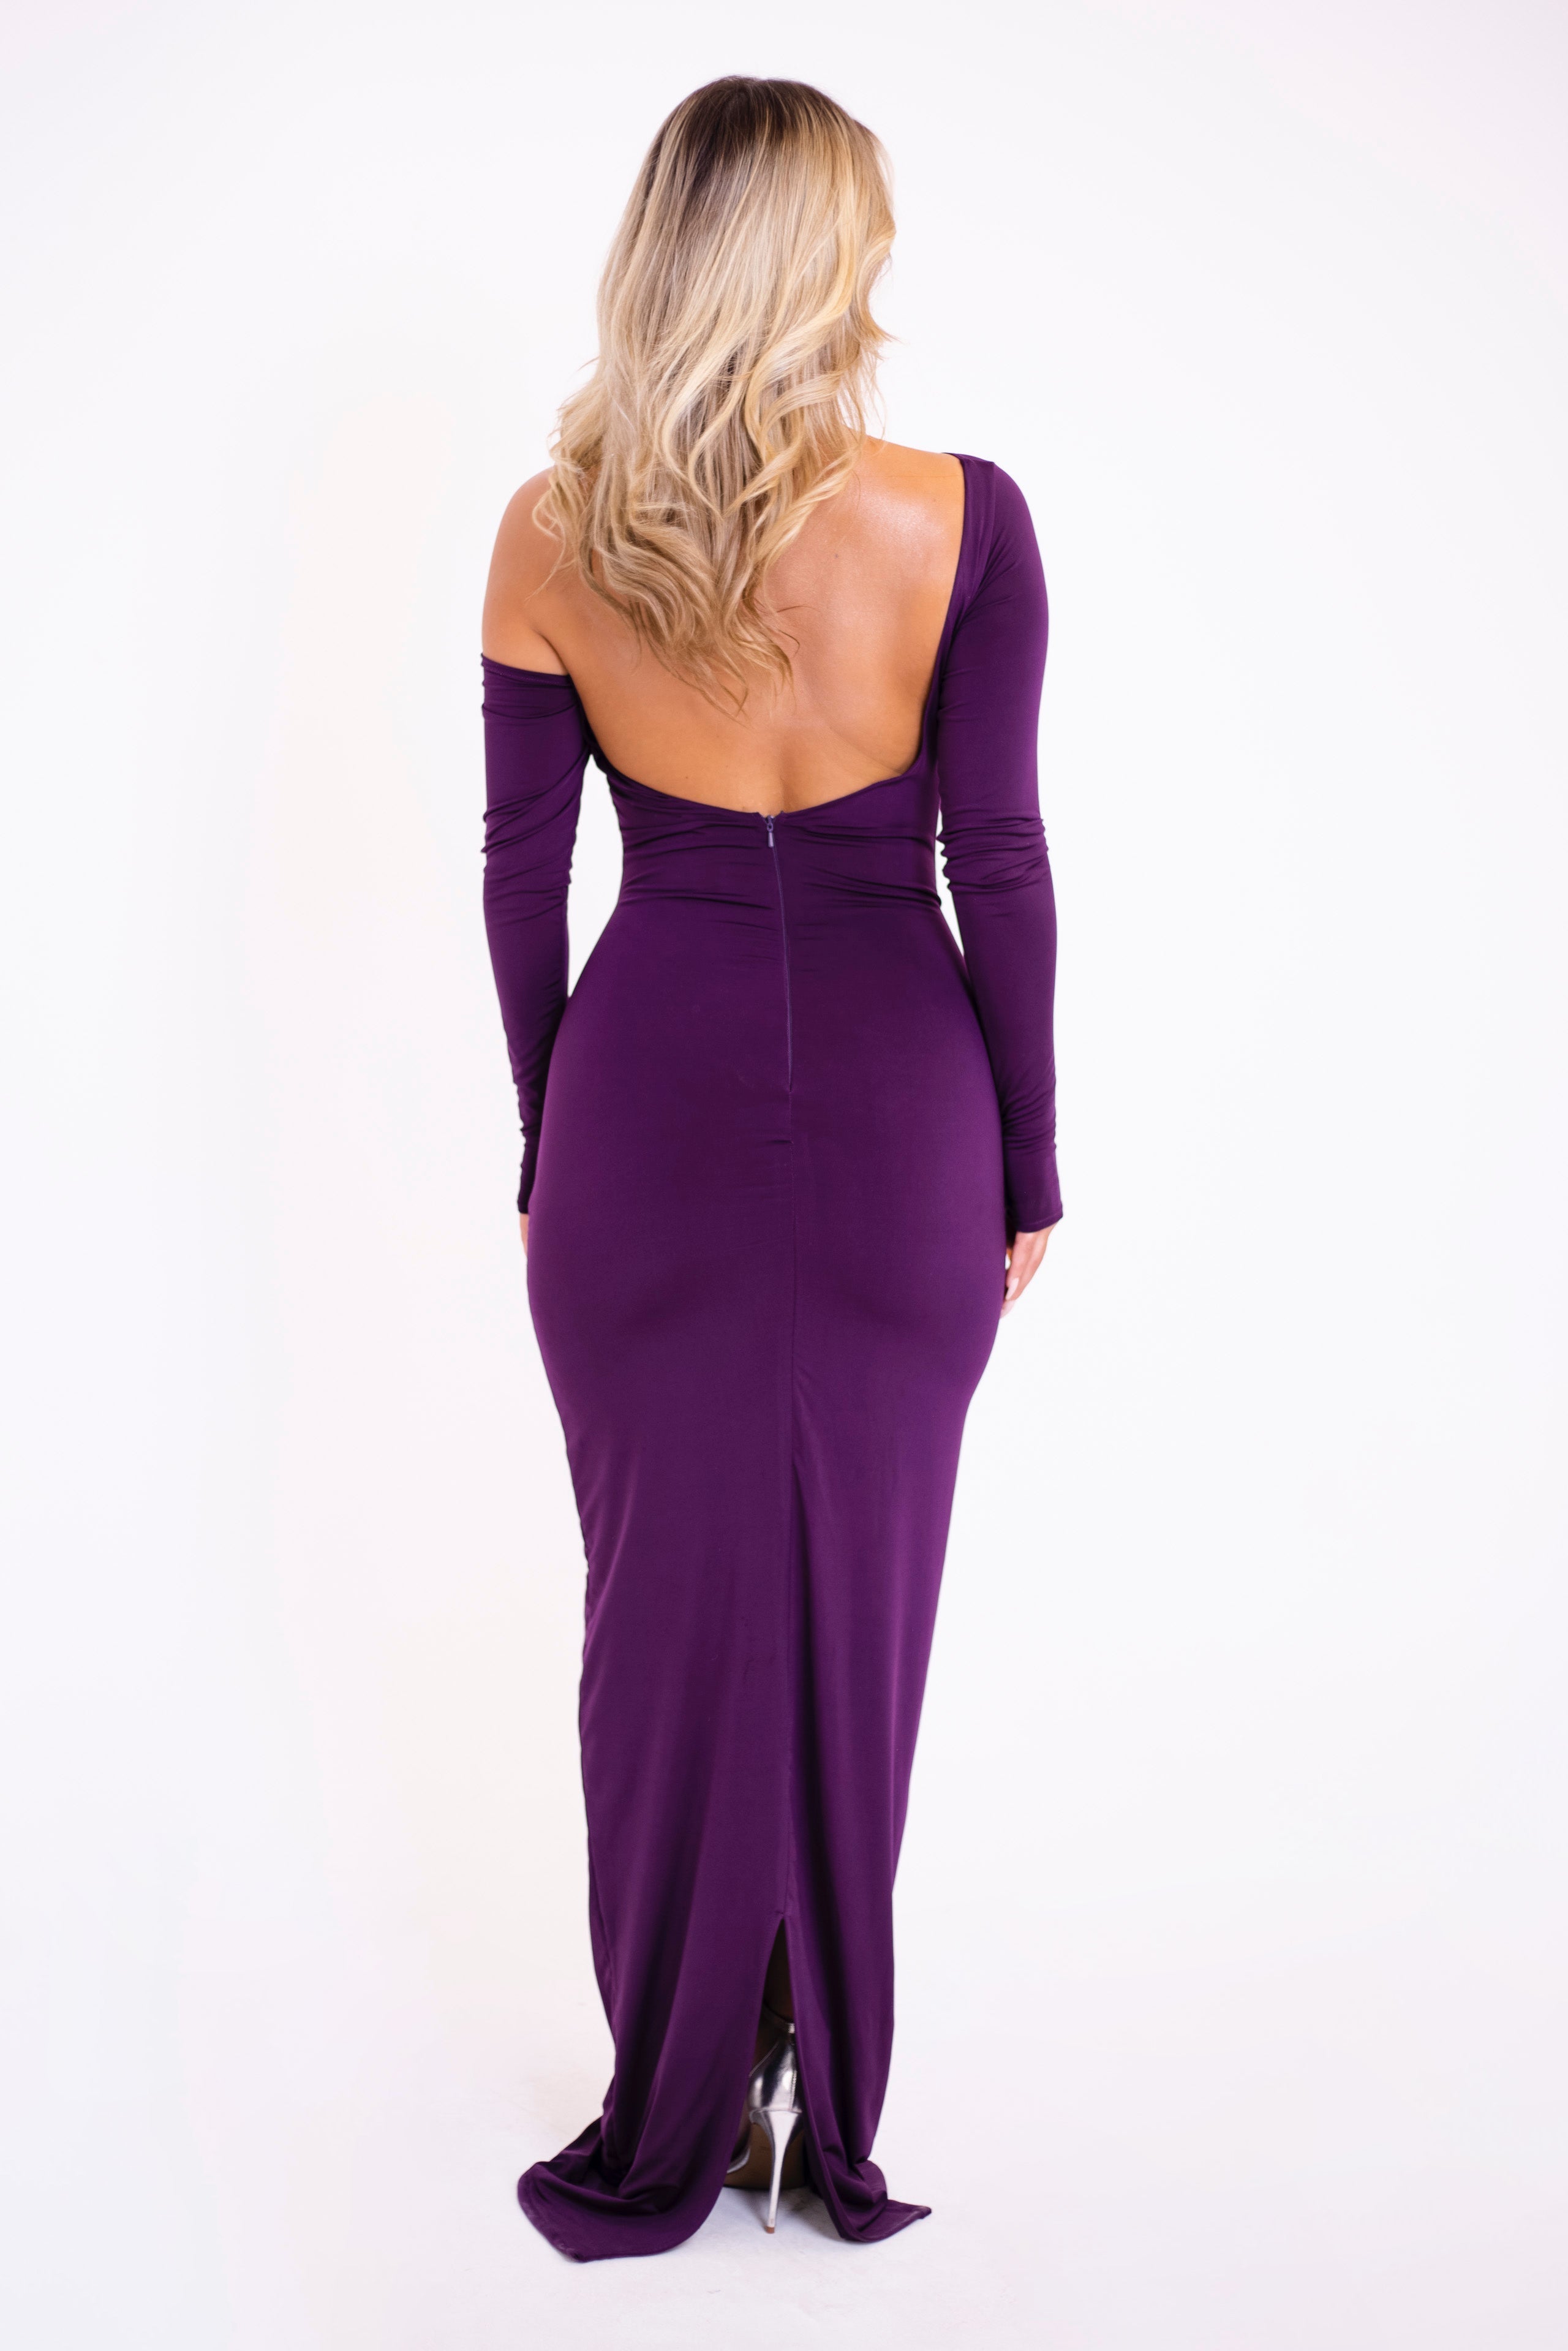 Agnessa Dark Purple Dress